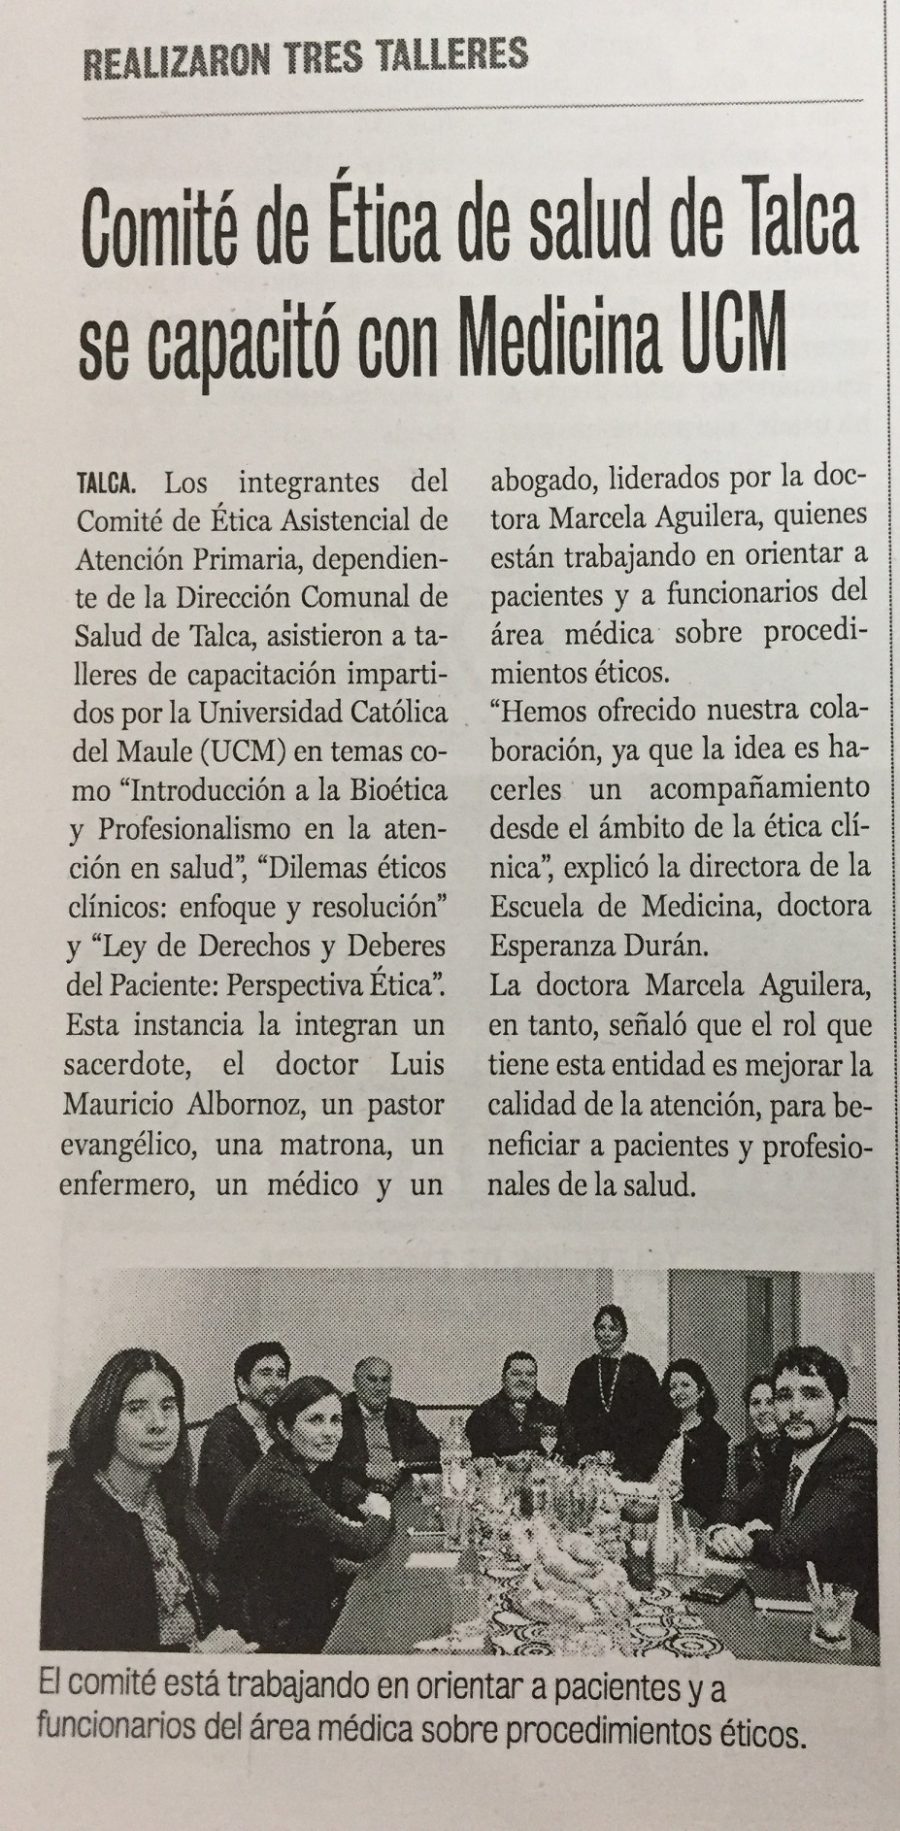 26 de septiembre en Diario La Prensa: “Comité de Ética de salud de Talca se capacitó con Medicina UCM”